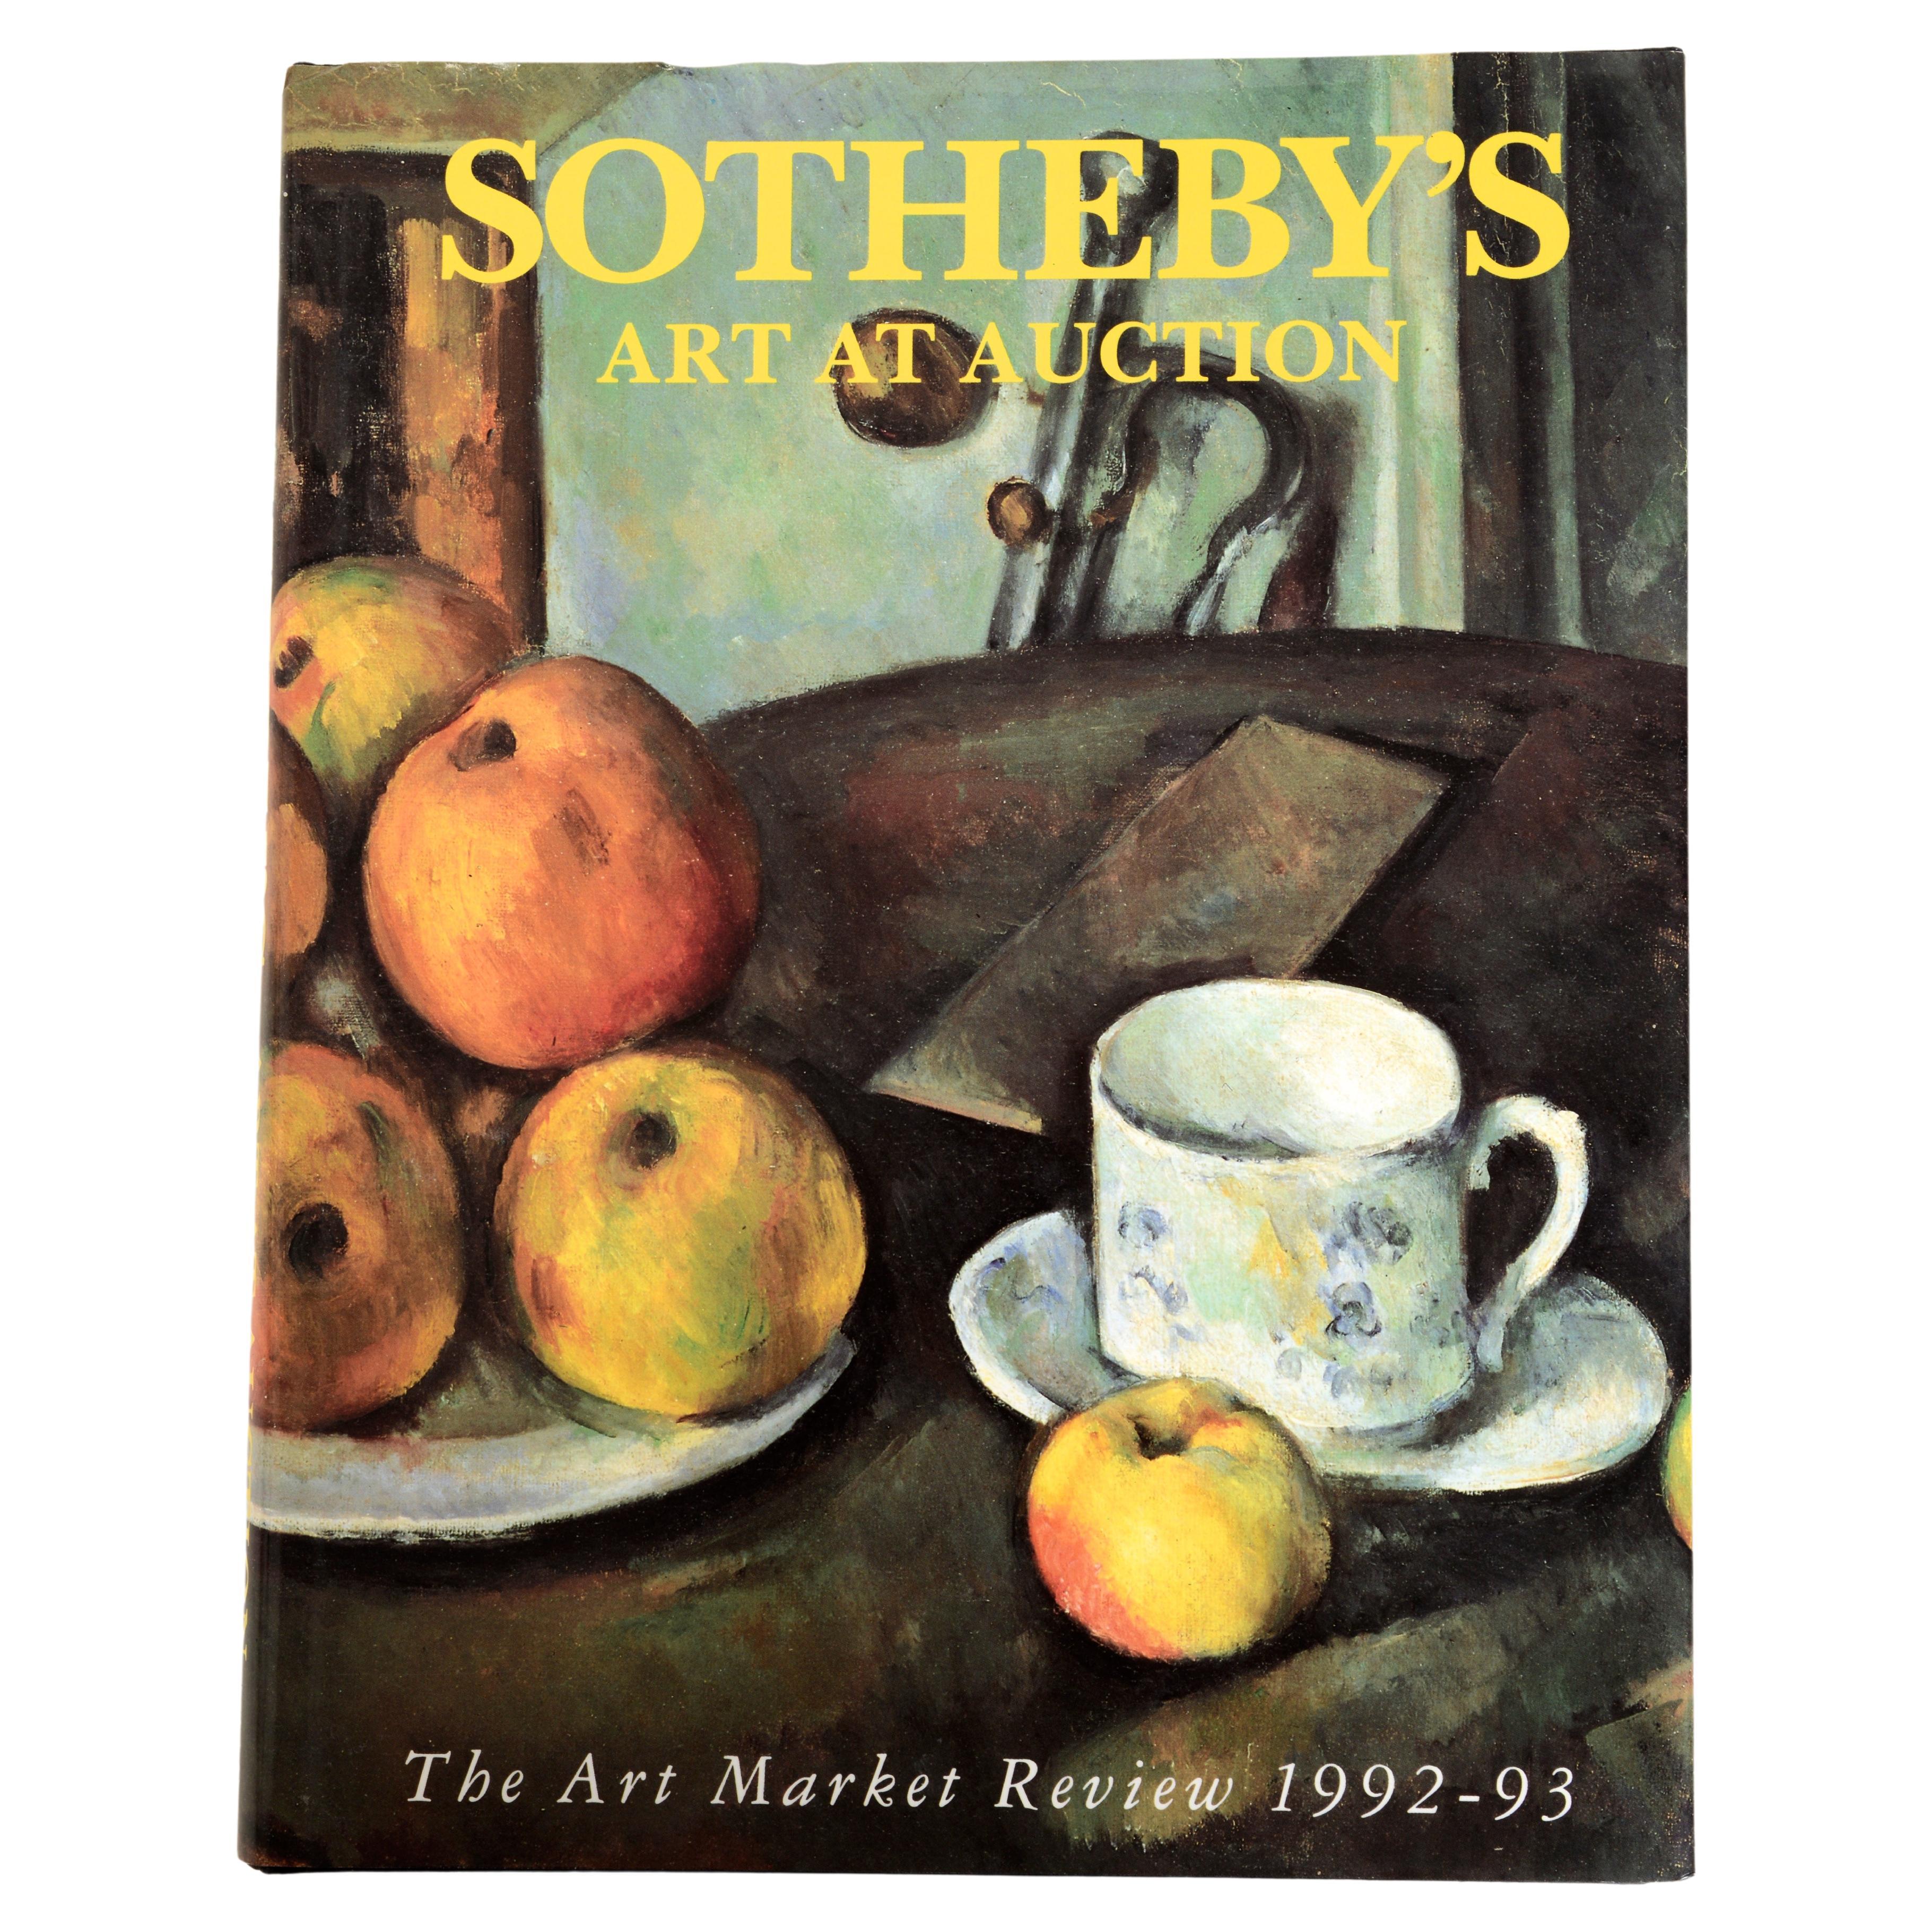 Sotheby's Art at Auction 1992-93 : évaluation du marché de l'art 1st Ed